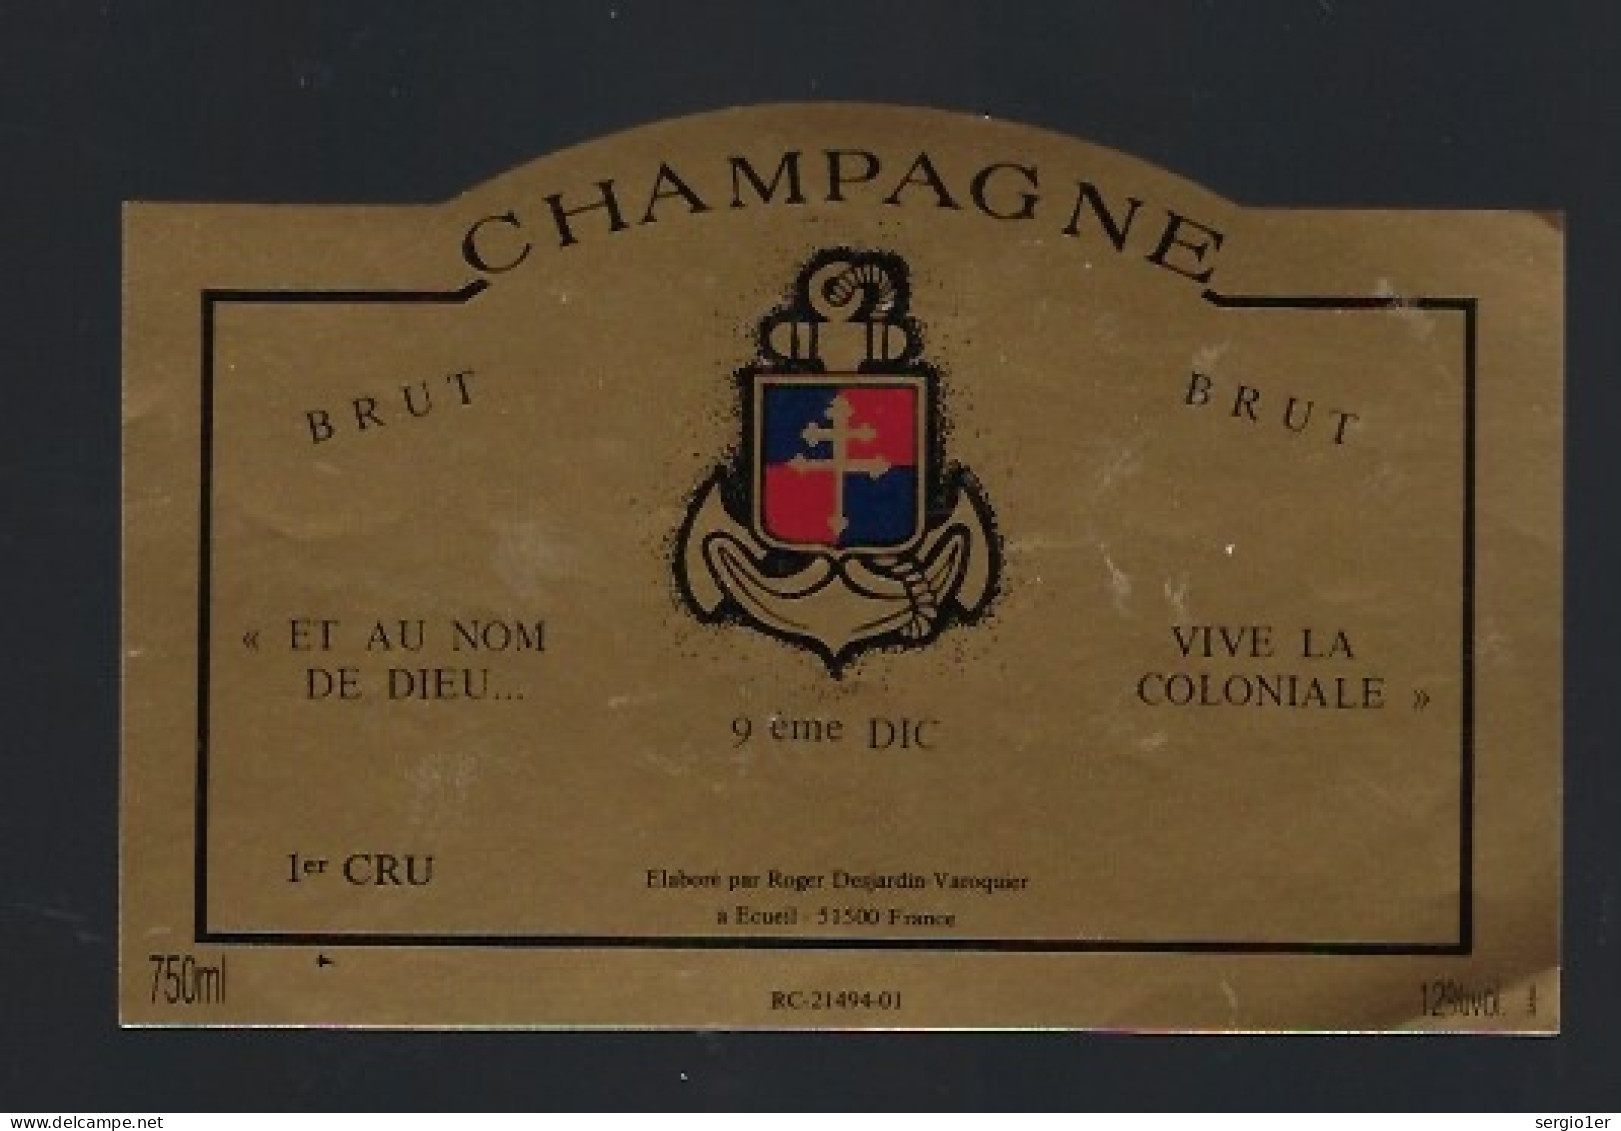 Etiquette Champagne Brut Et Au Nom De Dieu...vive La Coloniale 9ème DIC Roger Dejardin Varoquier  Marne 51 " Militaire" - Champagne